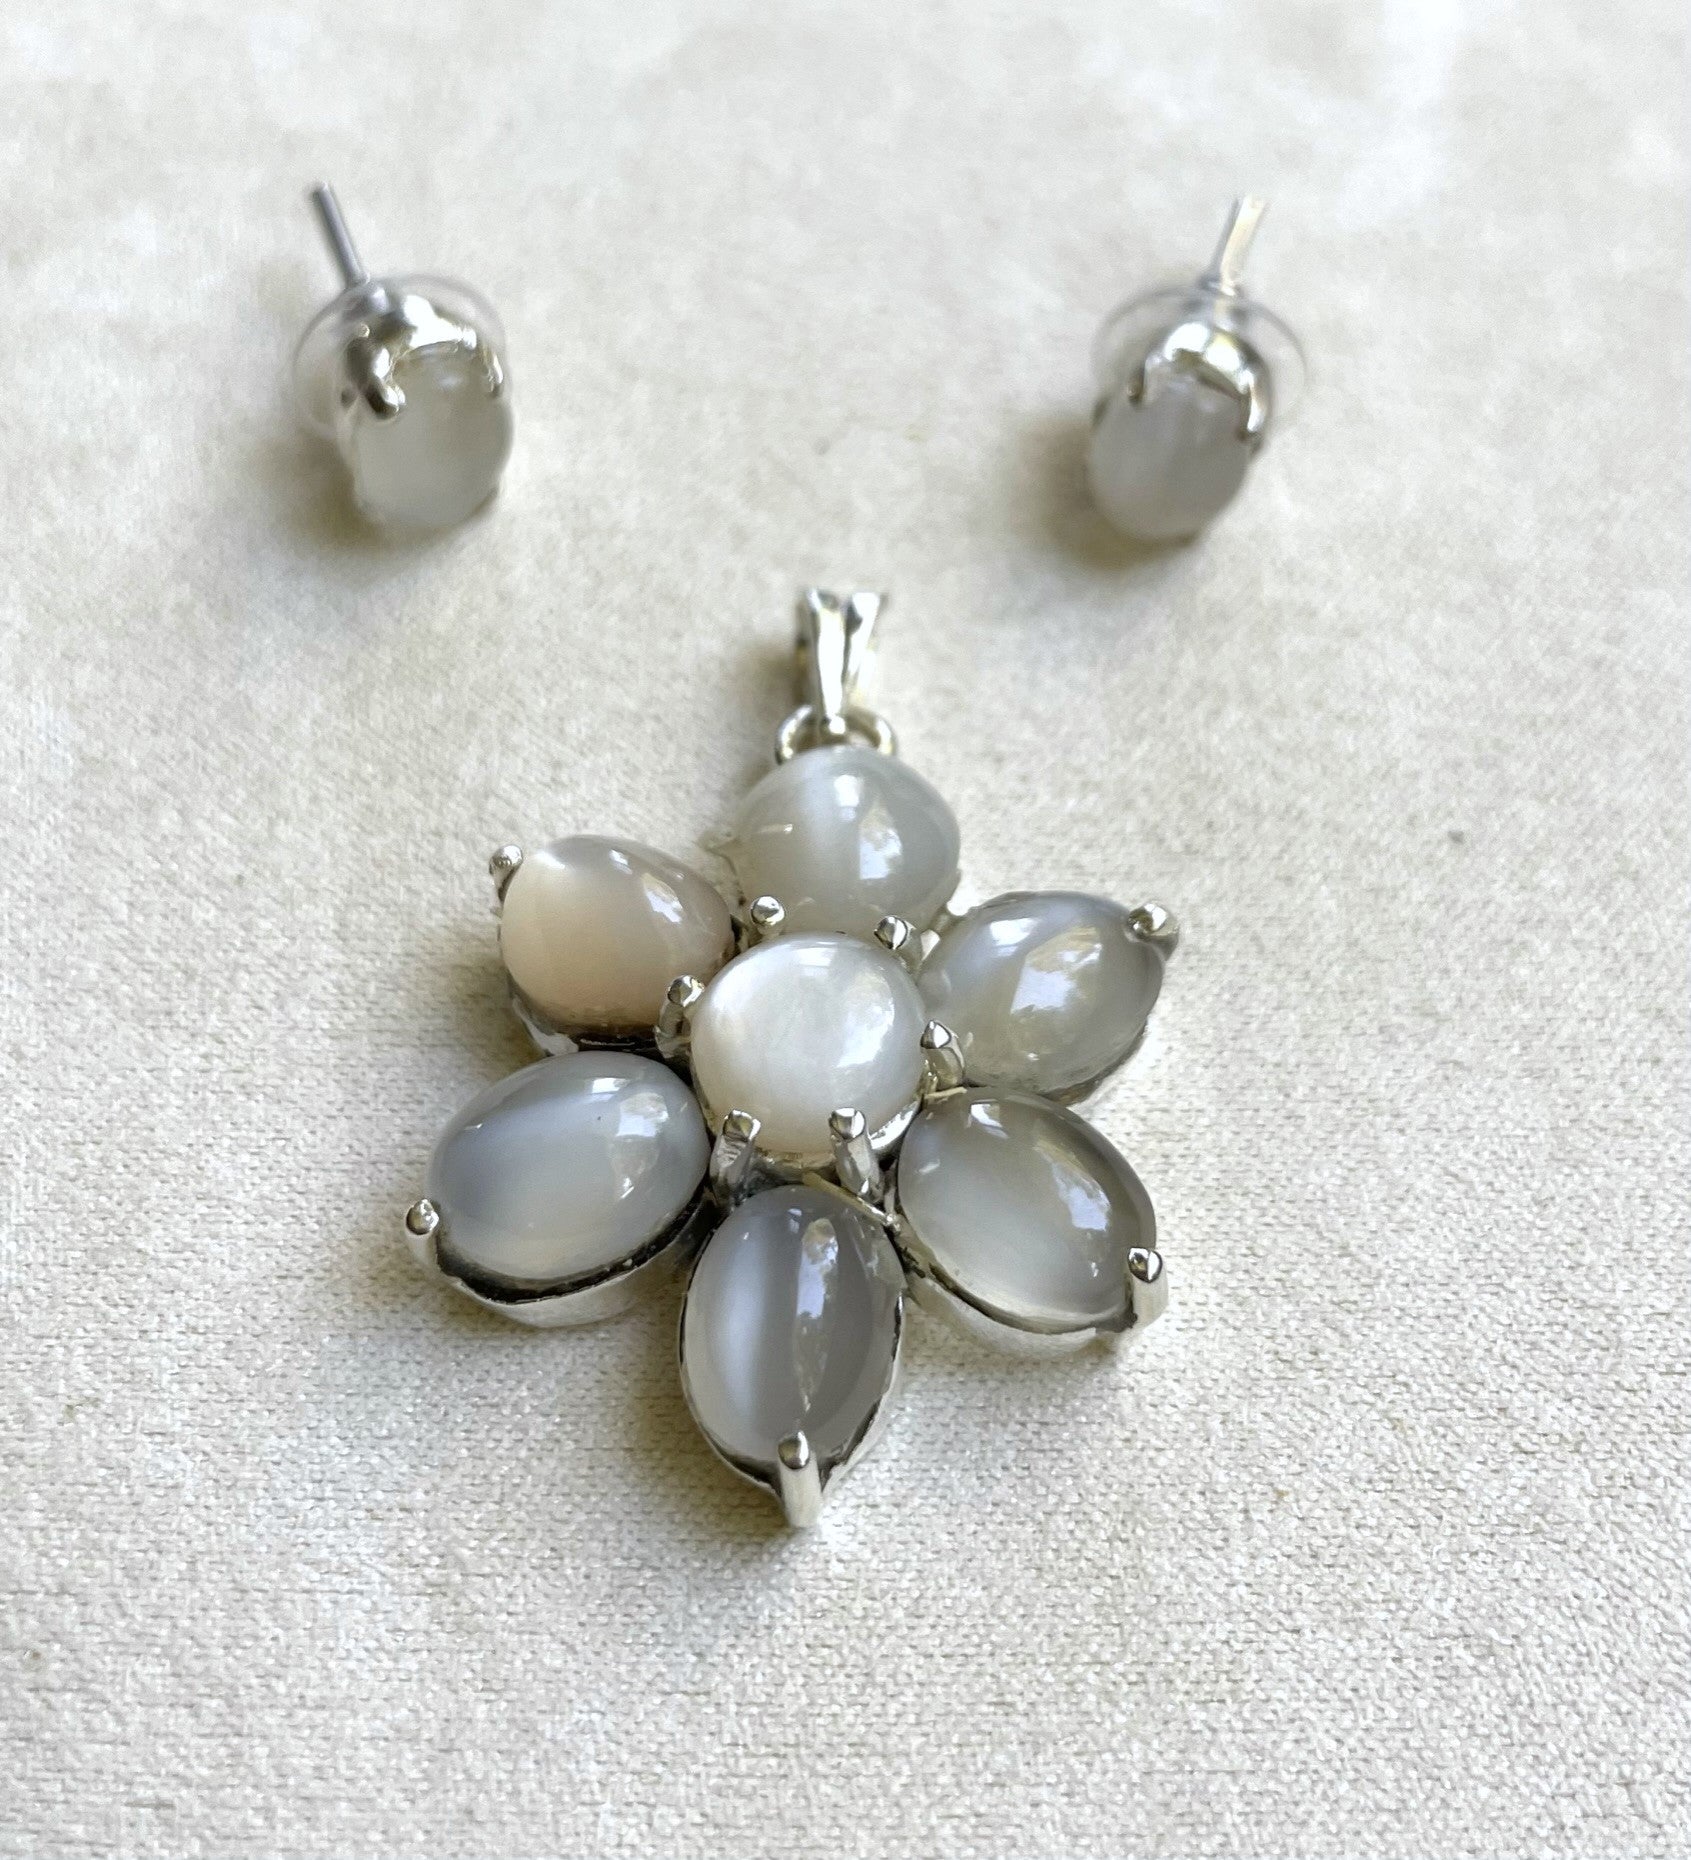 Moonstone flower pendant with earrings